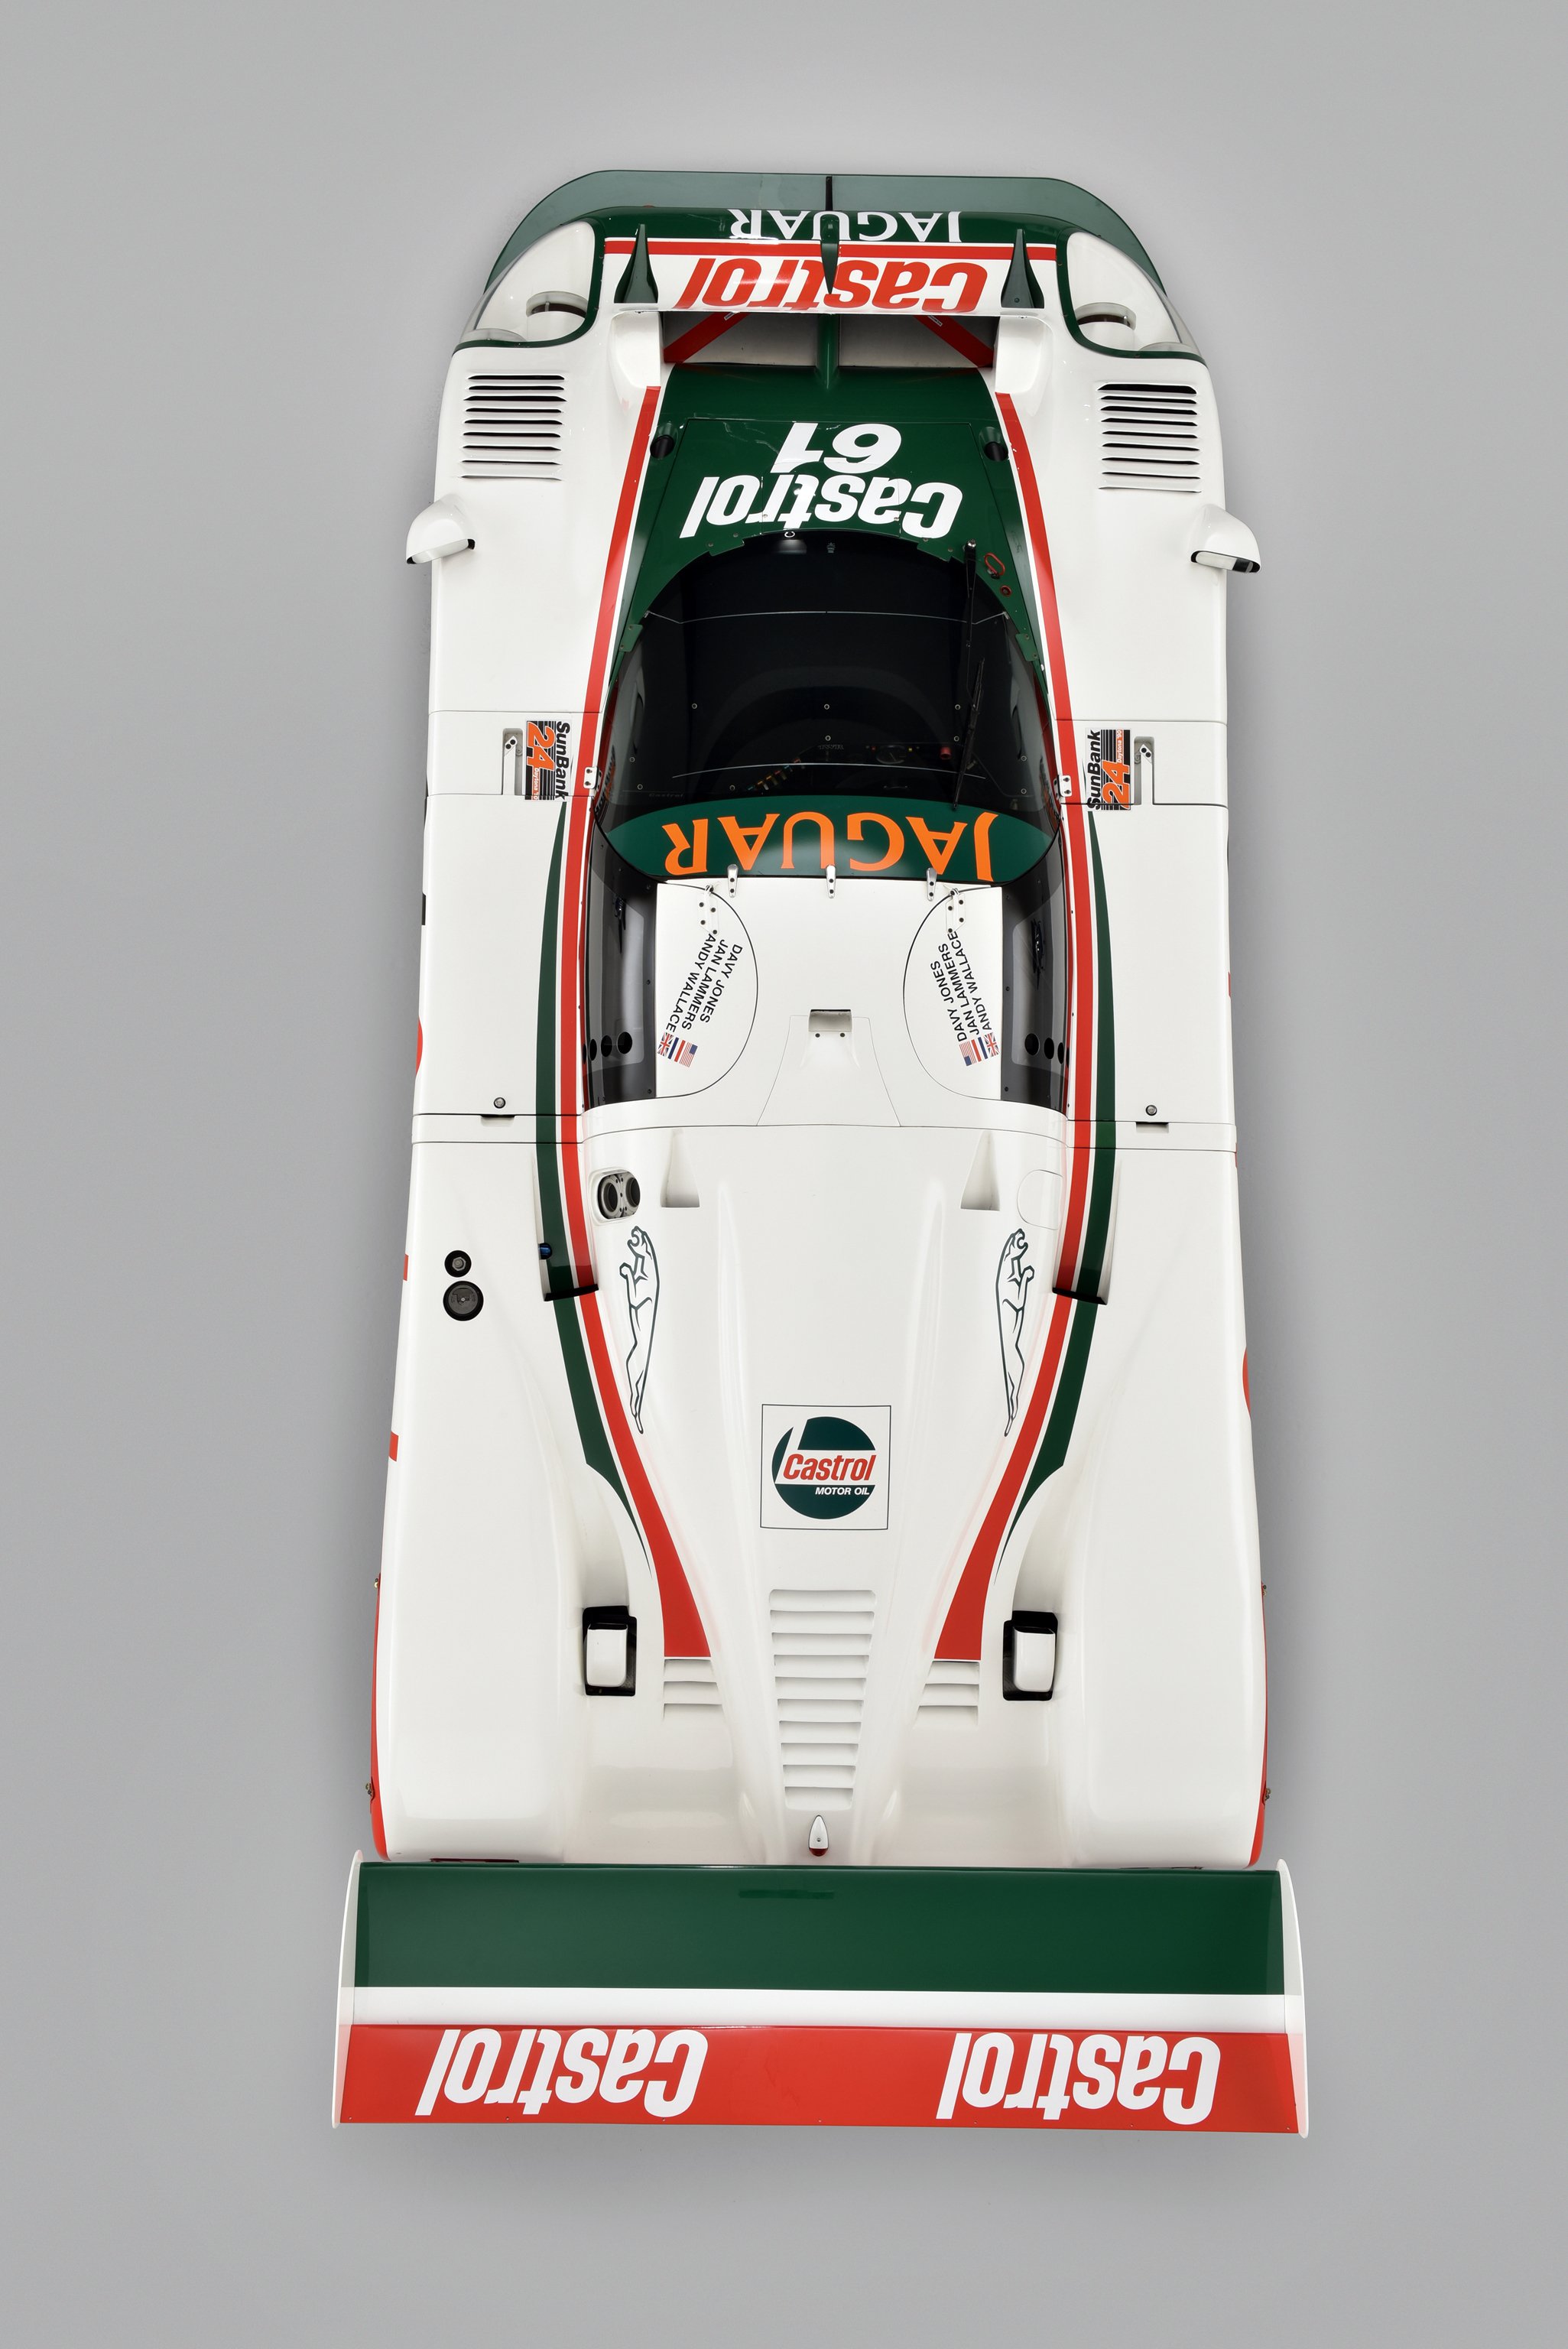 1988, Jaguar, Xjr9, Le mans, Gran, Prix, Race, Racing Wallpaper